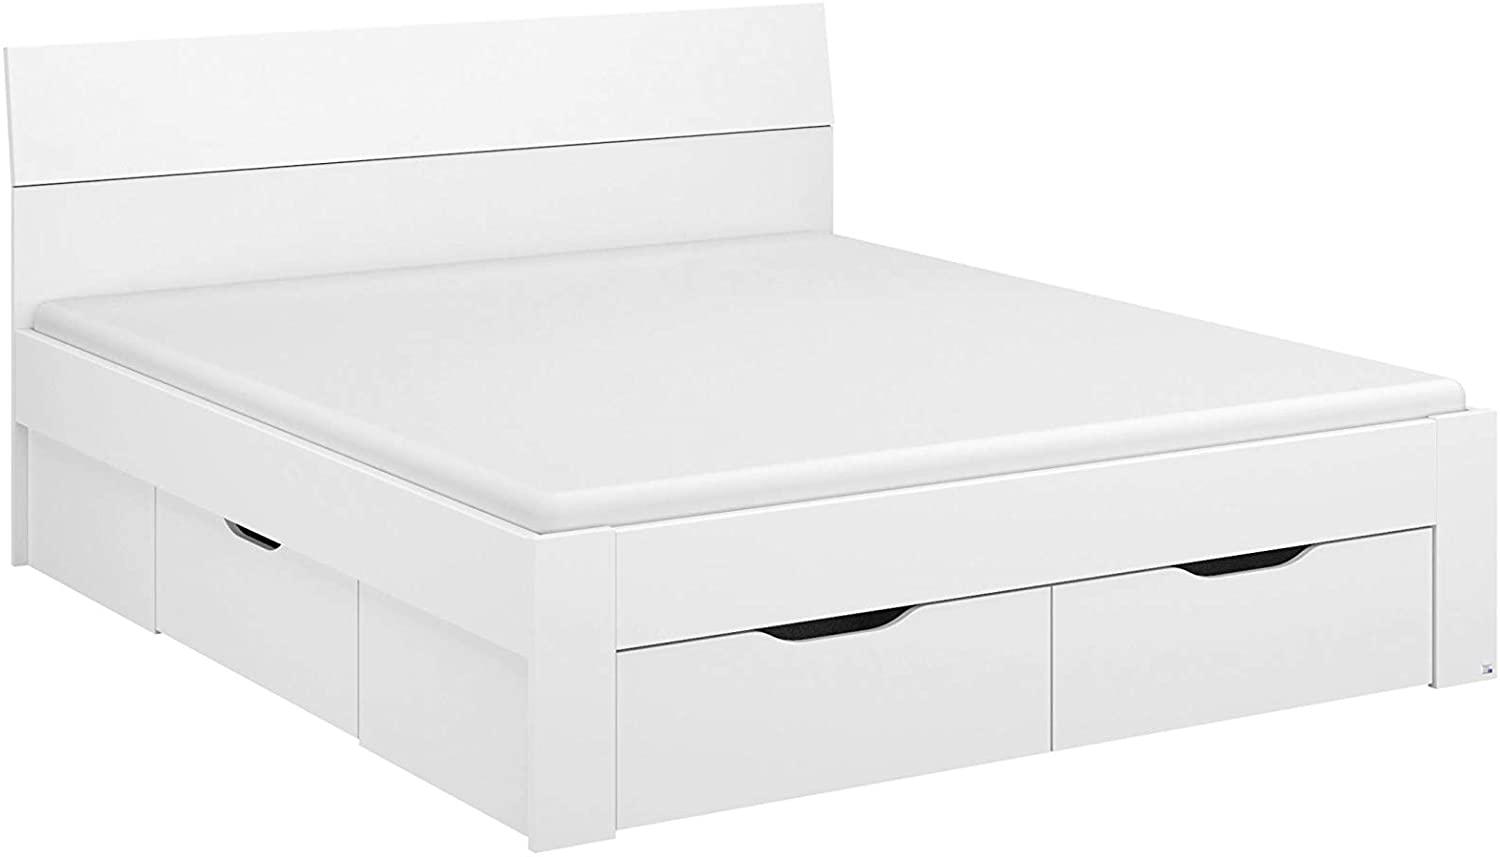 Rauch Möbel Flexx Bett Stauraumbett in Weiß mit 3 Schubkästen als zusätzlichen Stauraum Liegefläche 140 x 200 cm Gesamtmaße Bett BxHxT 145 x 90 x 209 cm Bild 1